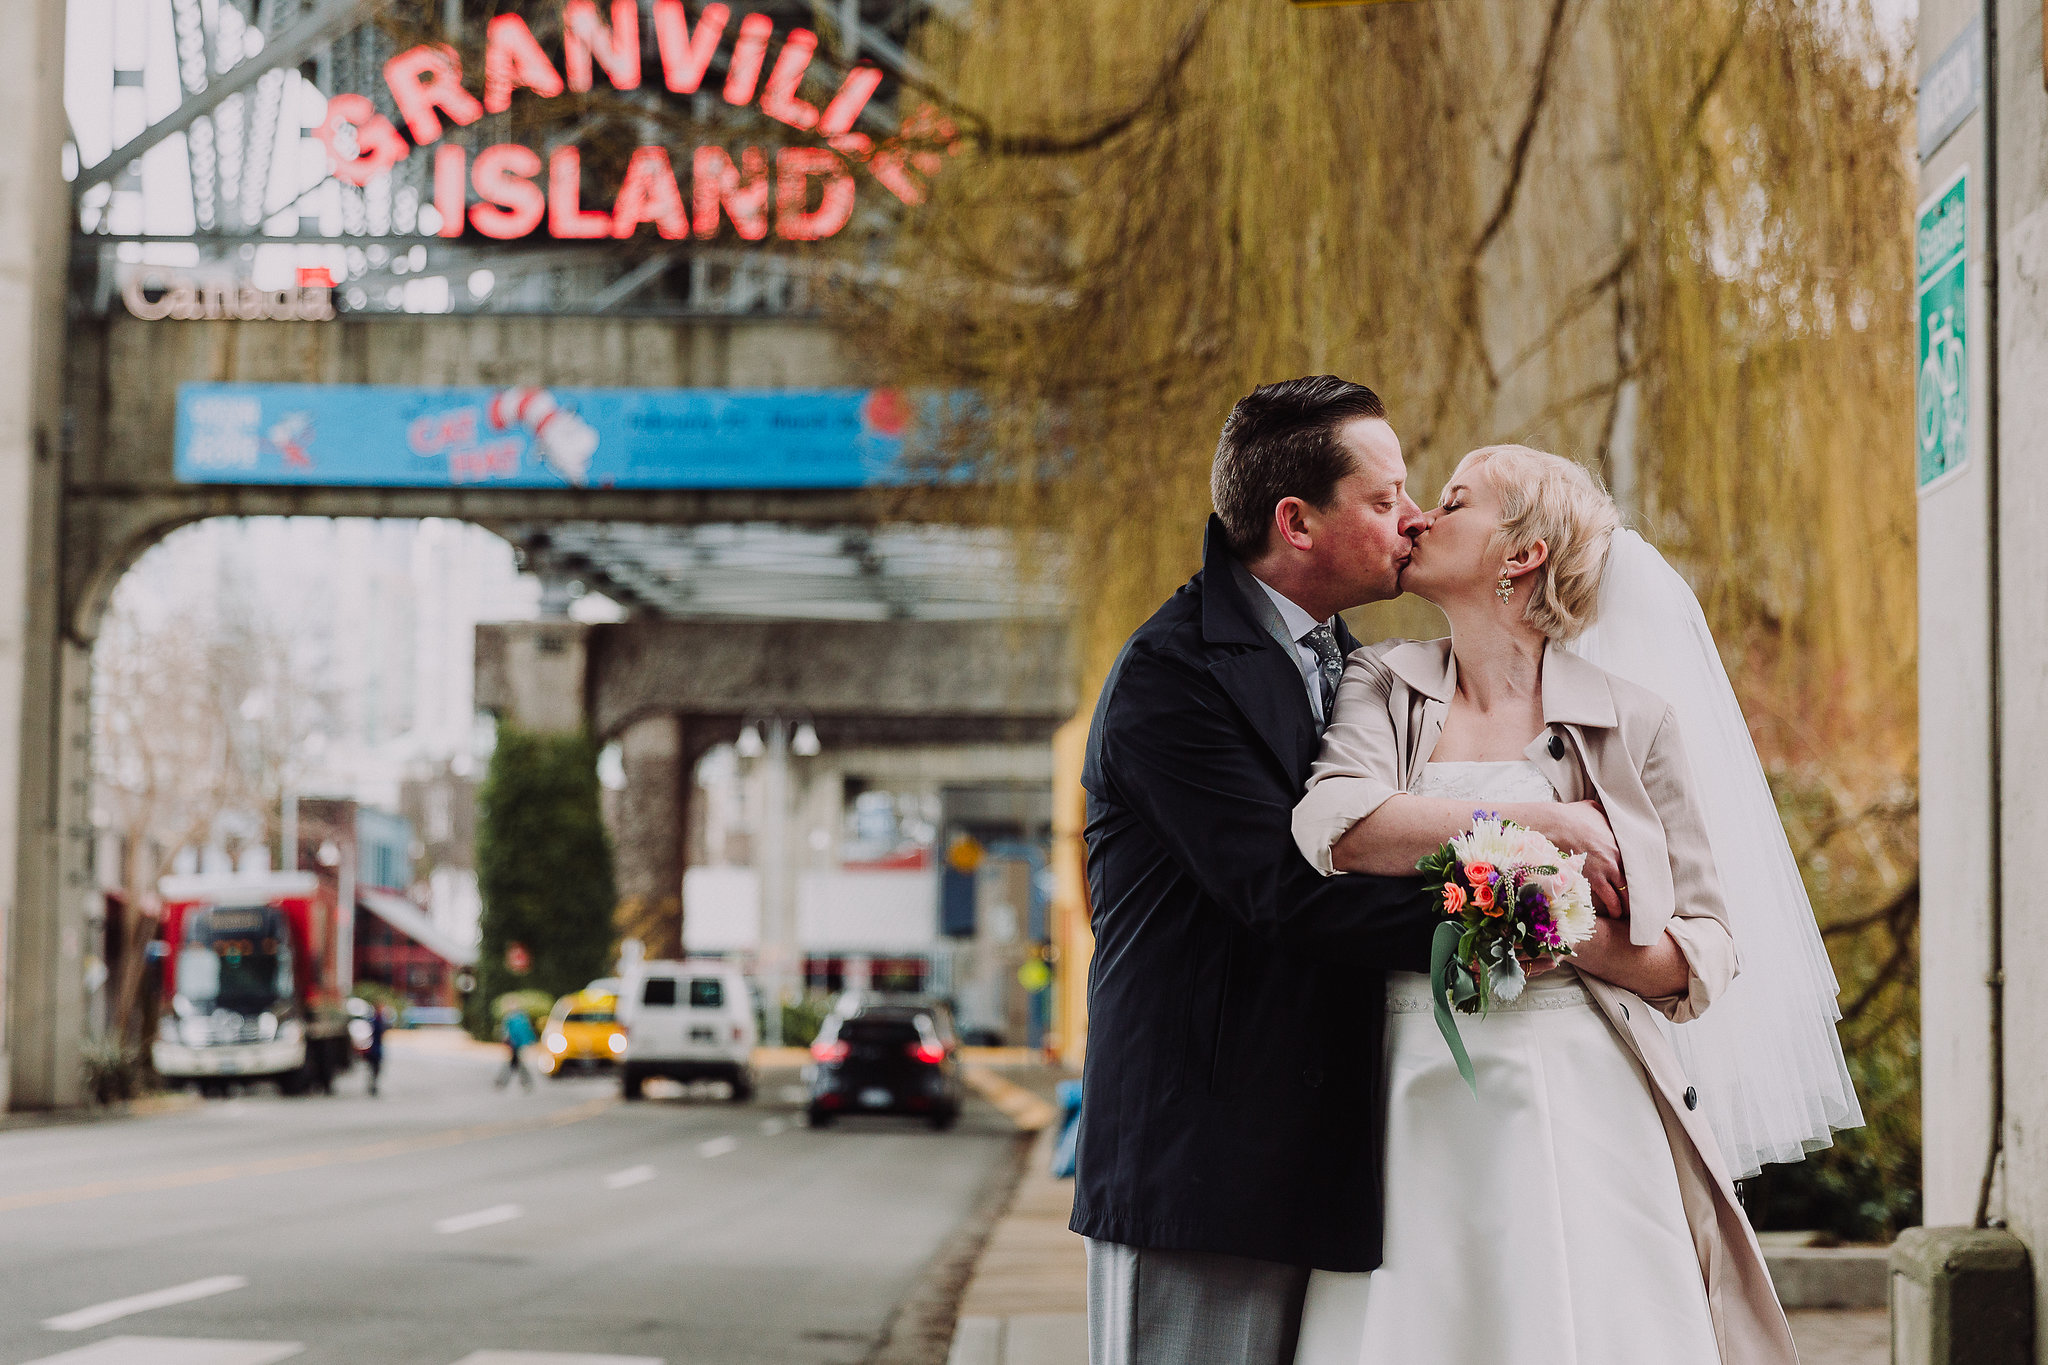 granville island bridge vancouver wedding